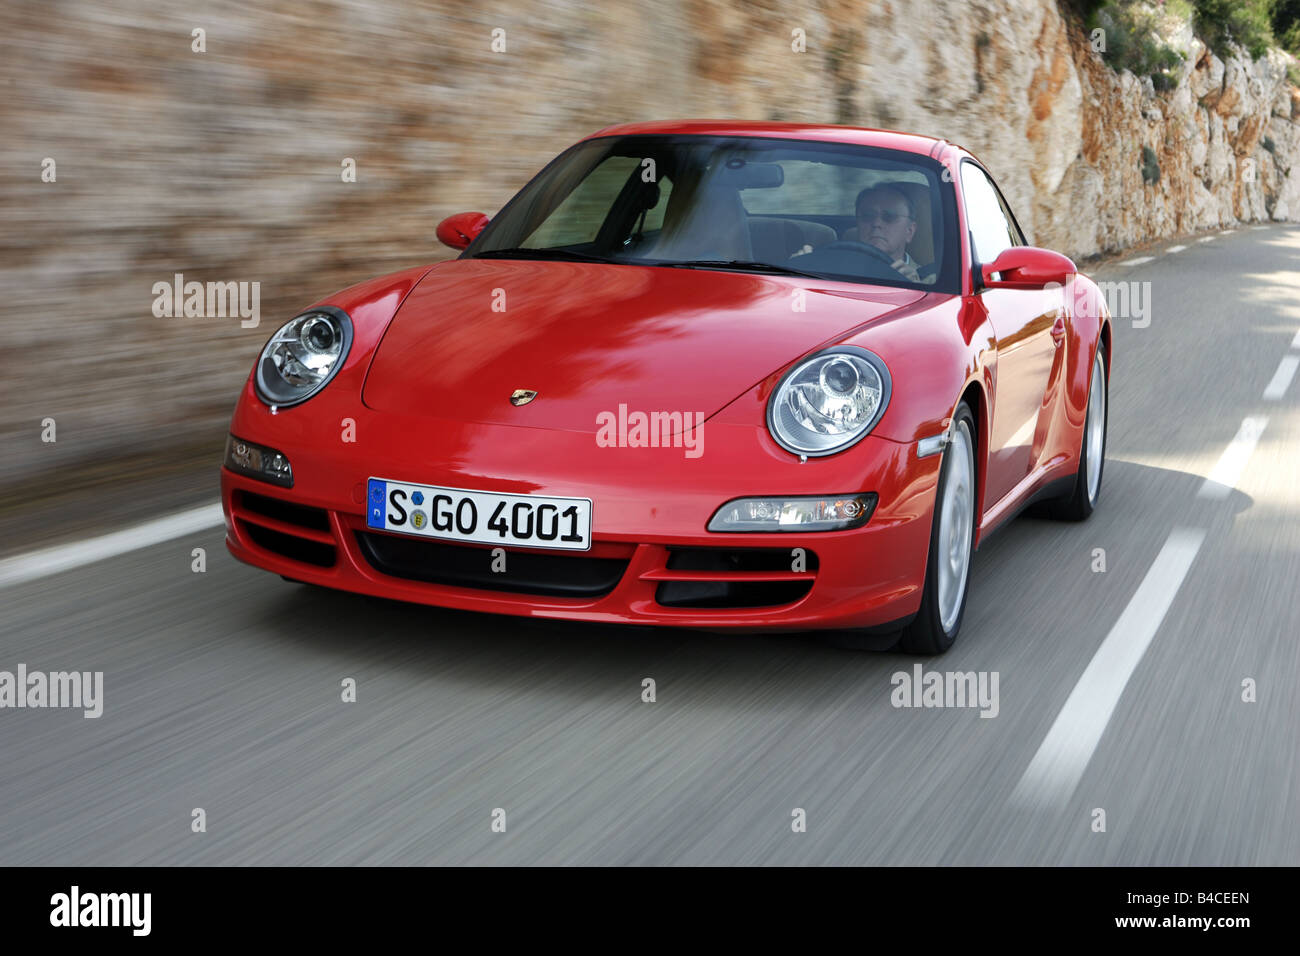 Coche, el Porsche 911 Carrera 4S, el modelo del año 2005-, rojo,  conducción, diagonal desde la parte frontal, vista frontal, country road,  Fotógrafo: Achi Fotografía de stock - Alamy